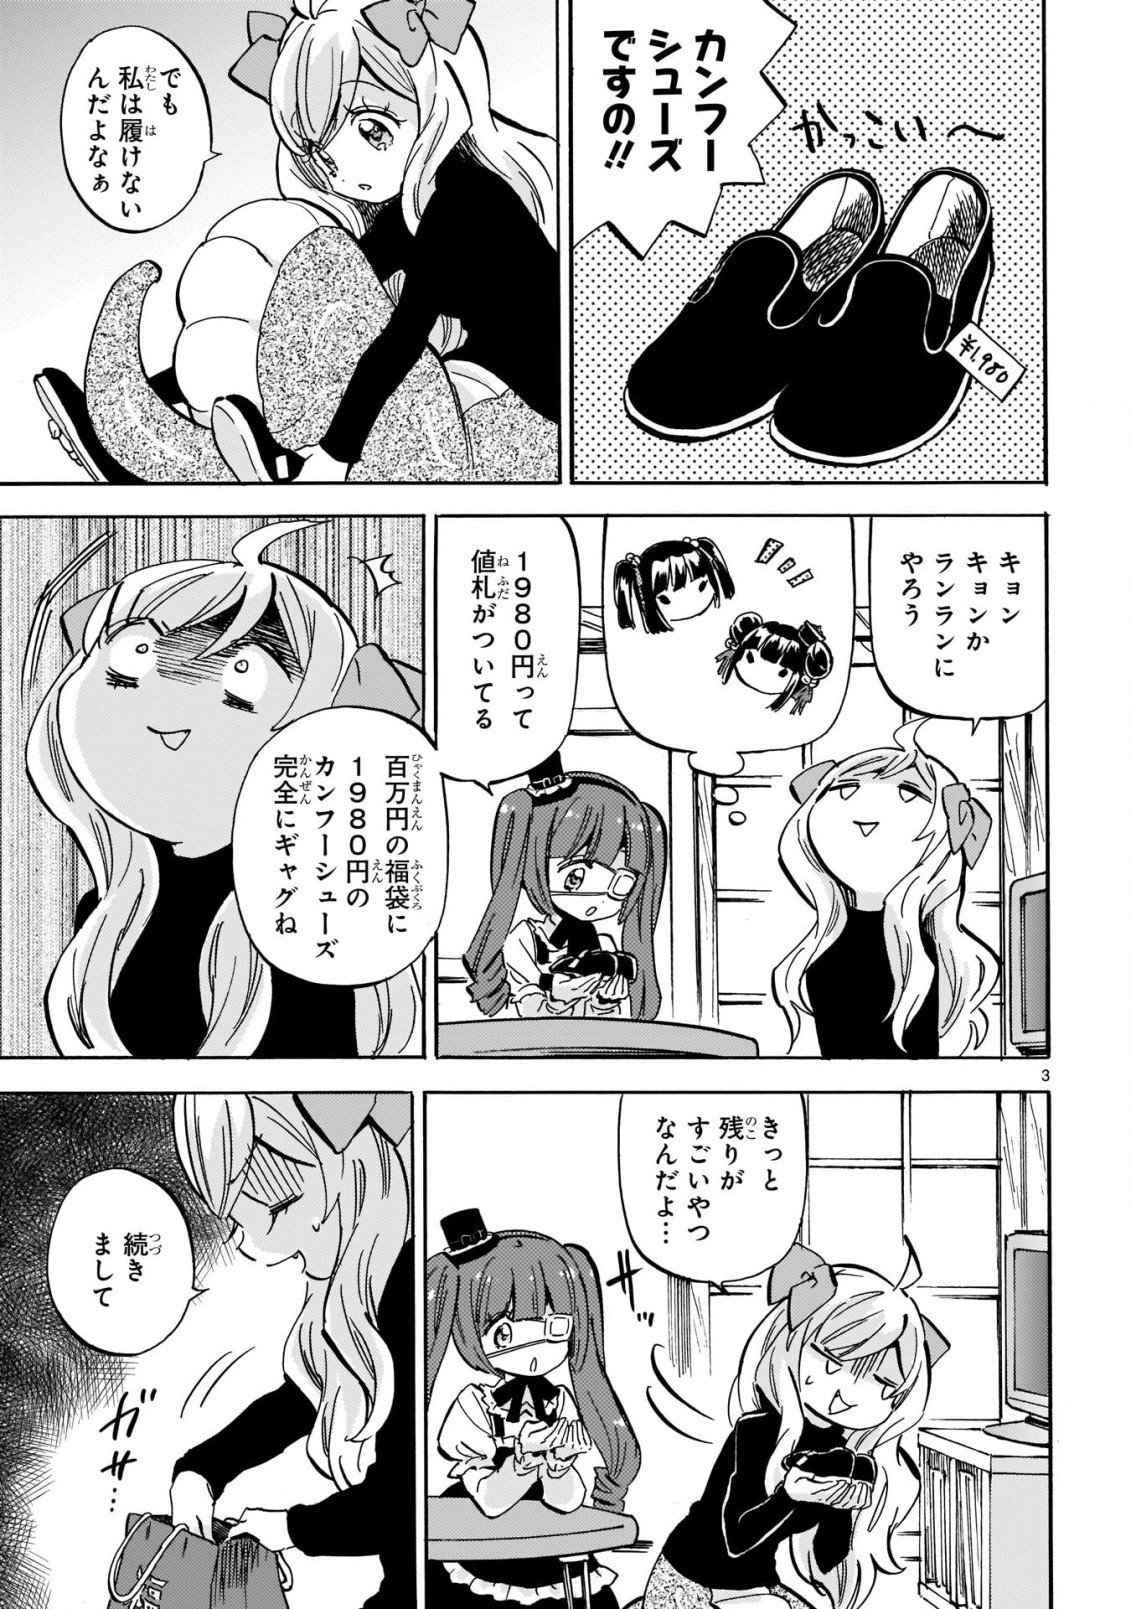 Jashin-chan Dropkick - Chapter 206 - Page 3